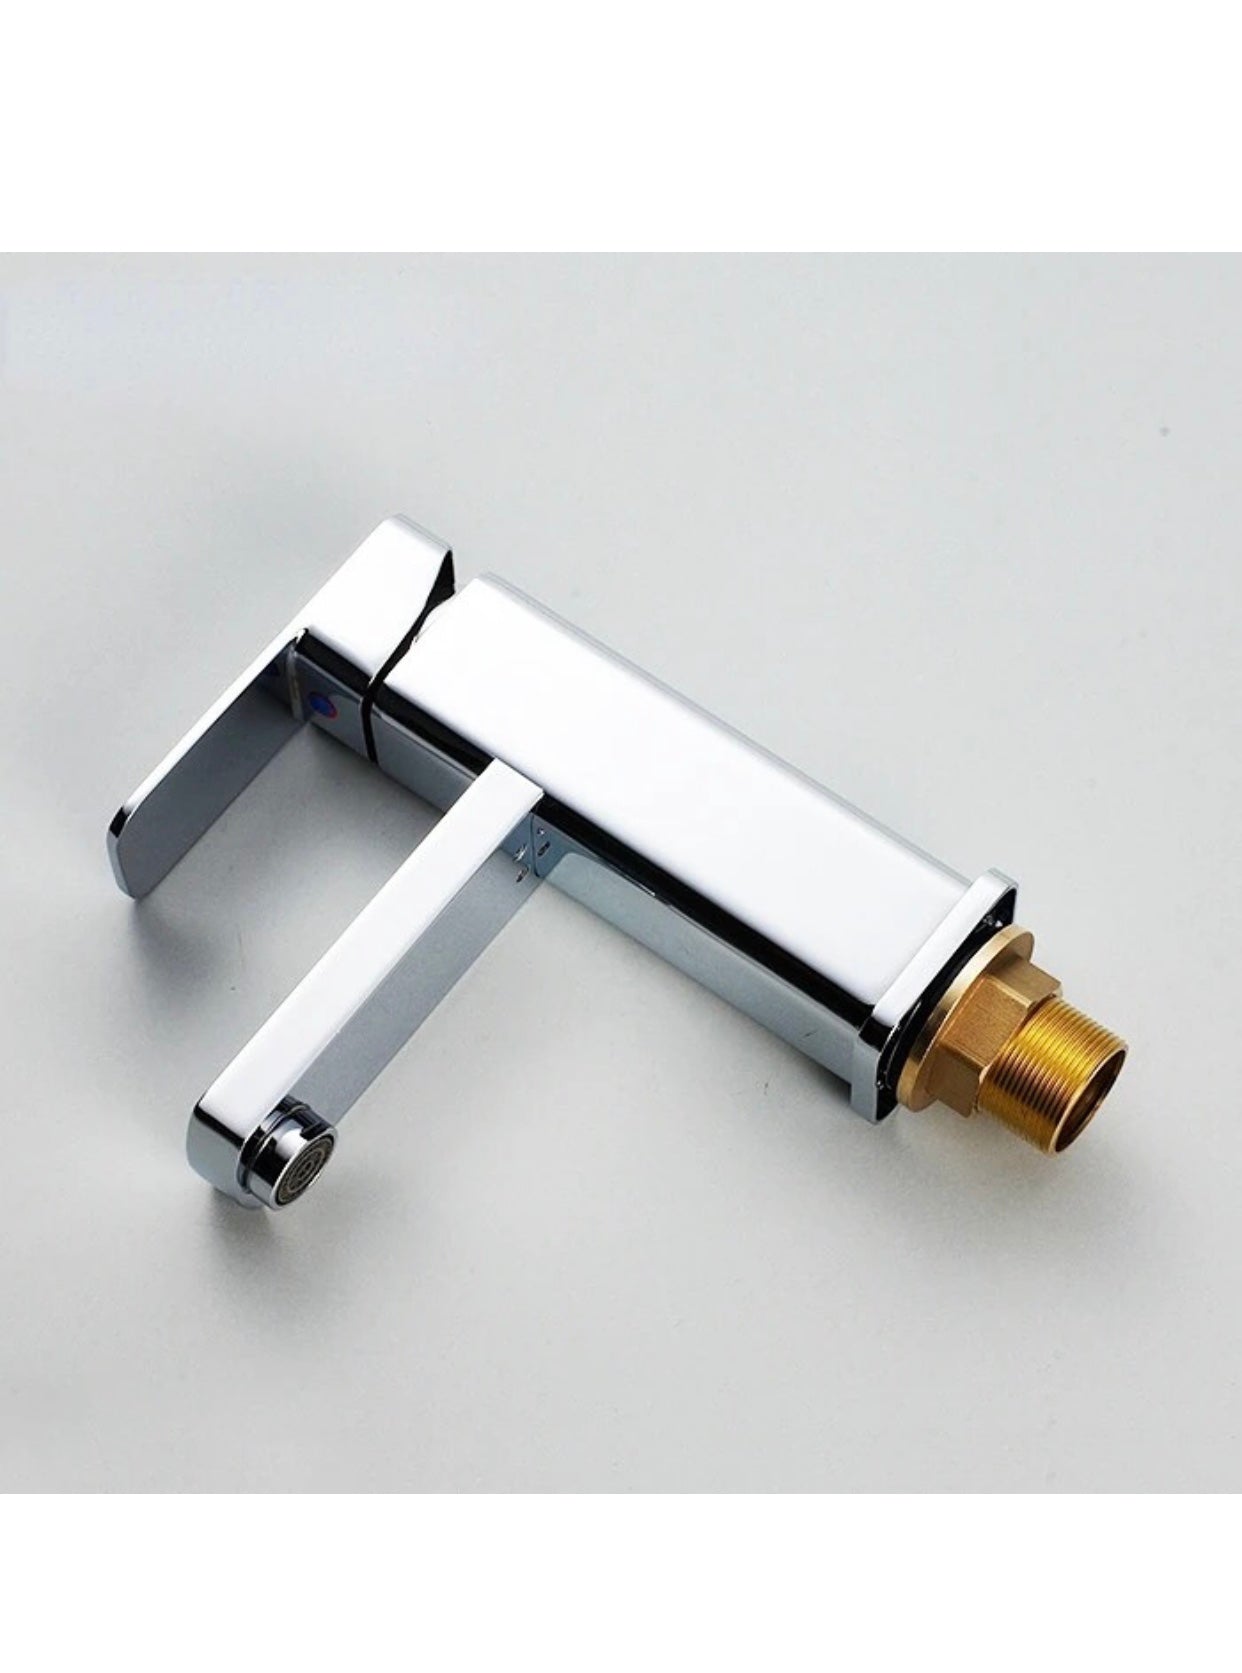 A|M Aquae Tormili Brass Taps Basin Mixer Single Handle Water Mixer Bathroom Faucet